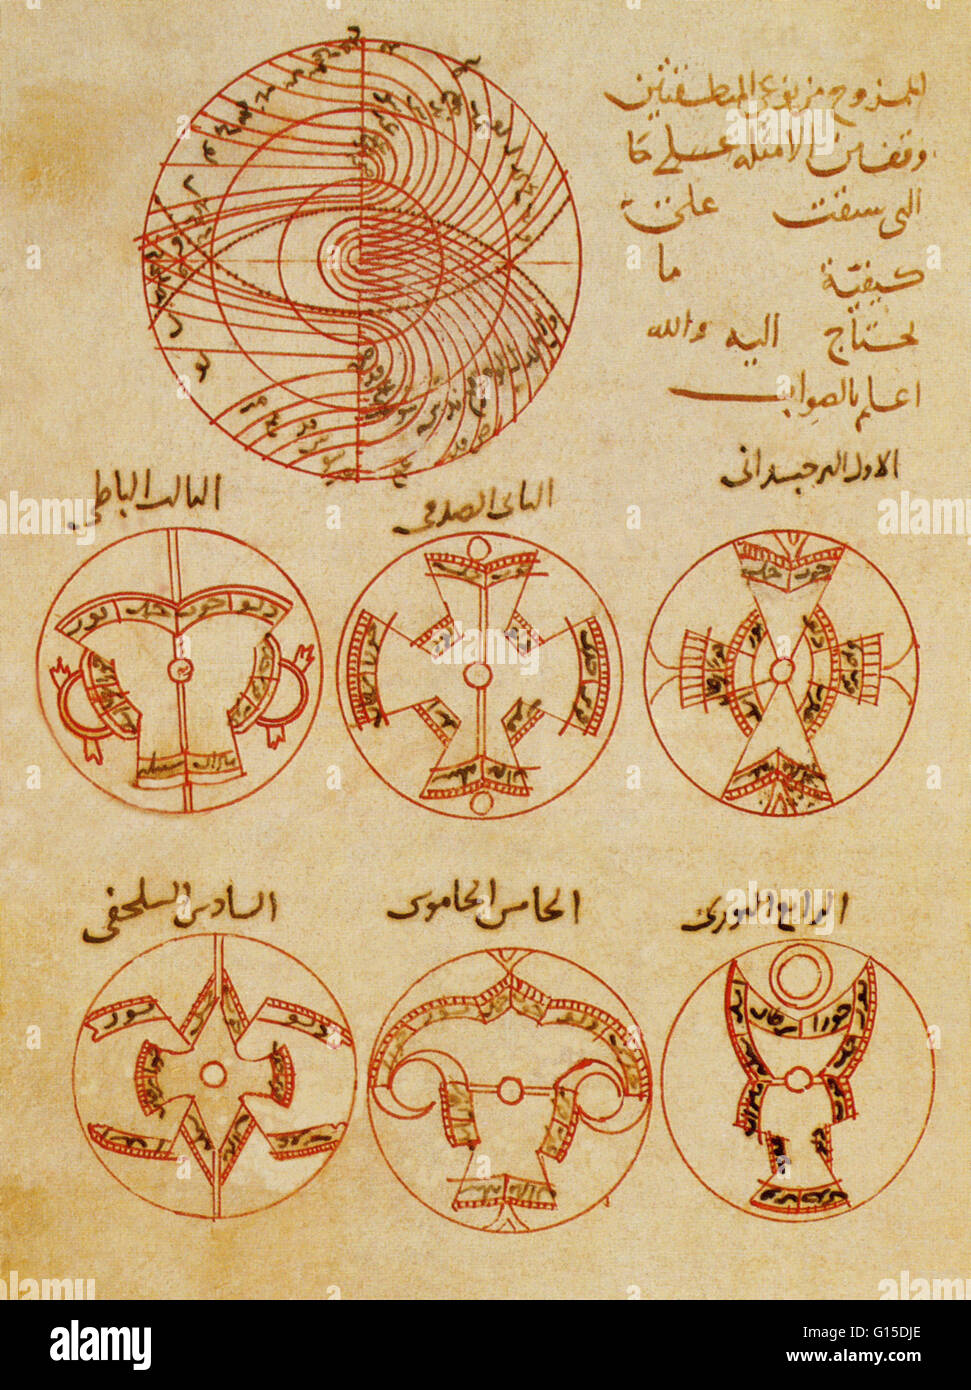 "Traité de l'Astrolabe,' un manuscrit arabe illustré-seldjoukide en script naskh, copié par Mahmud bin Muhammad al Mushi, Sivas, Turquie, datée 1231. C'est l'un des premiers exemplaires connus du traité, à l'origine par Abu Rayhan Muhammad Bin Banque D'Images